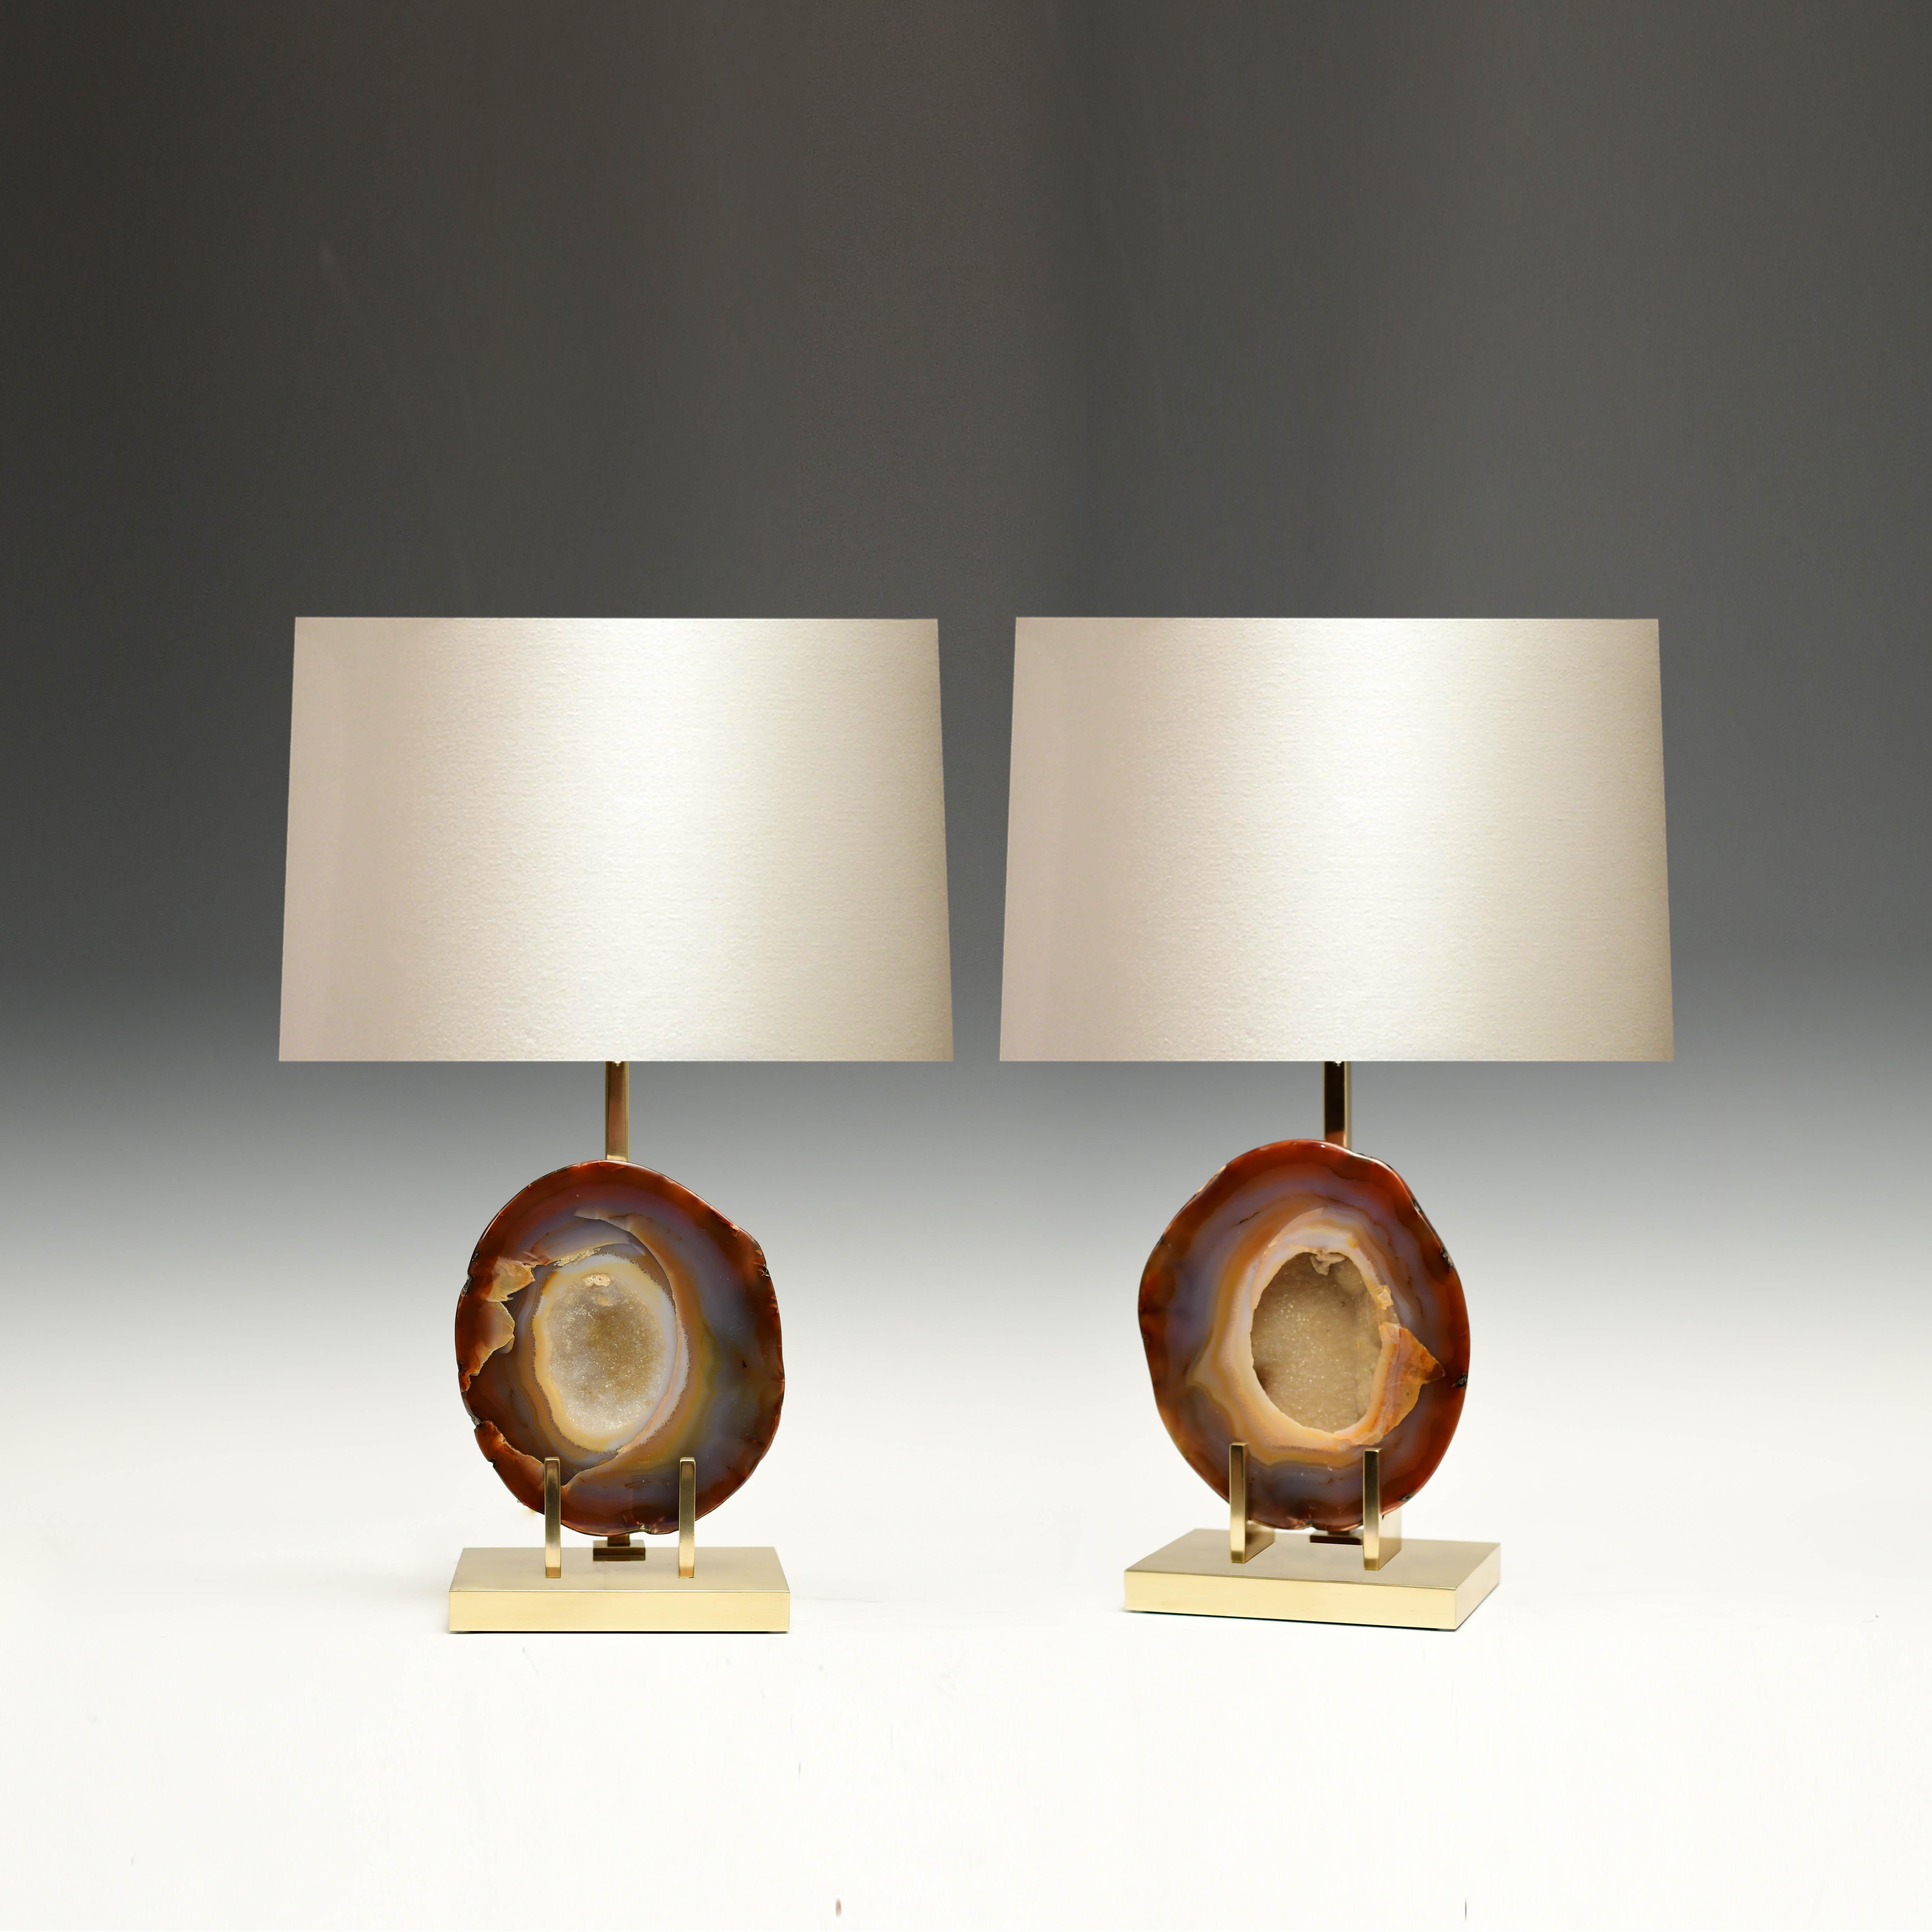 Paar seltene natürliche Achatfassungen als Lampen mit poliertem Messingständer, geschaffen von Phoenix Gallery.
(Lampenschirm nicht enthalten).